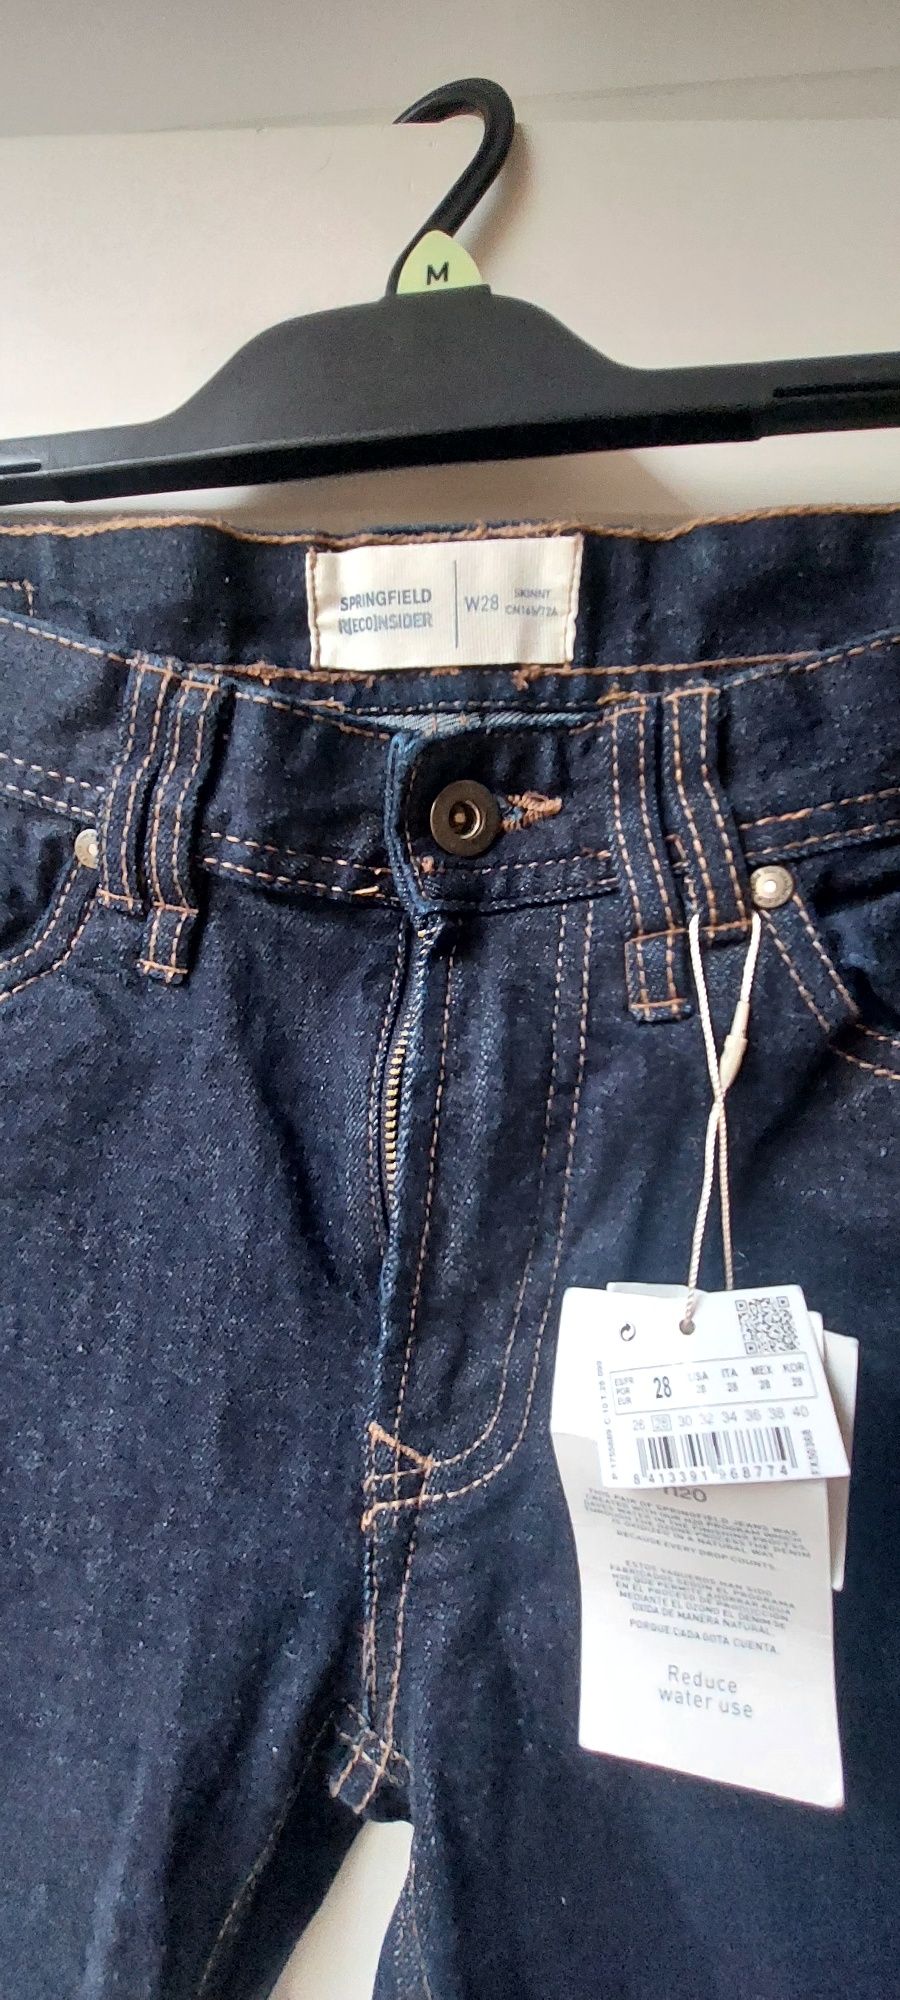 Nowe meskie spodnie z metka marki Springfield, rozmiar 28.